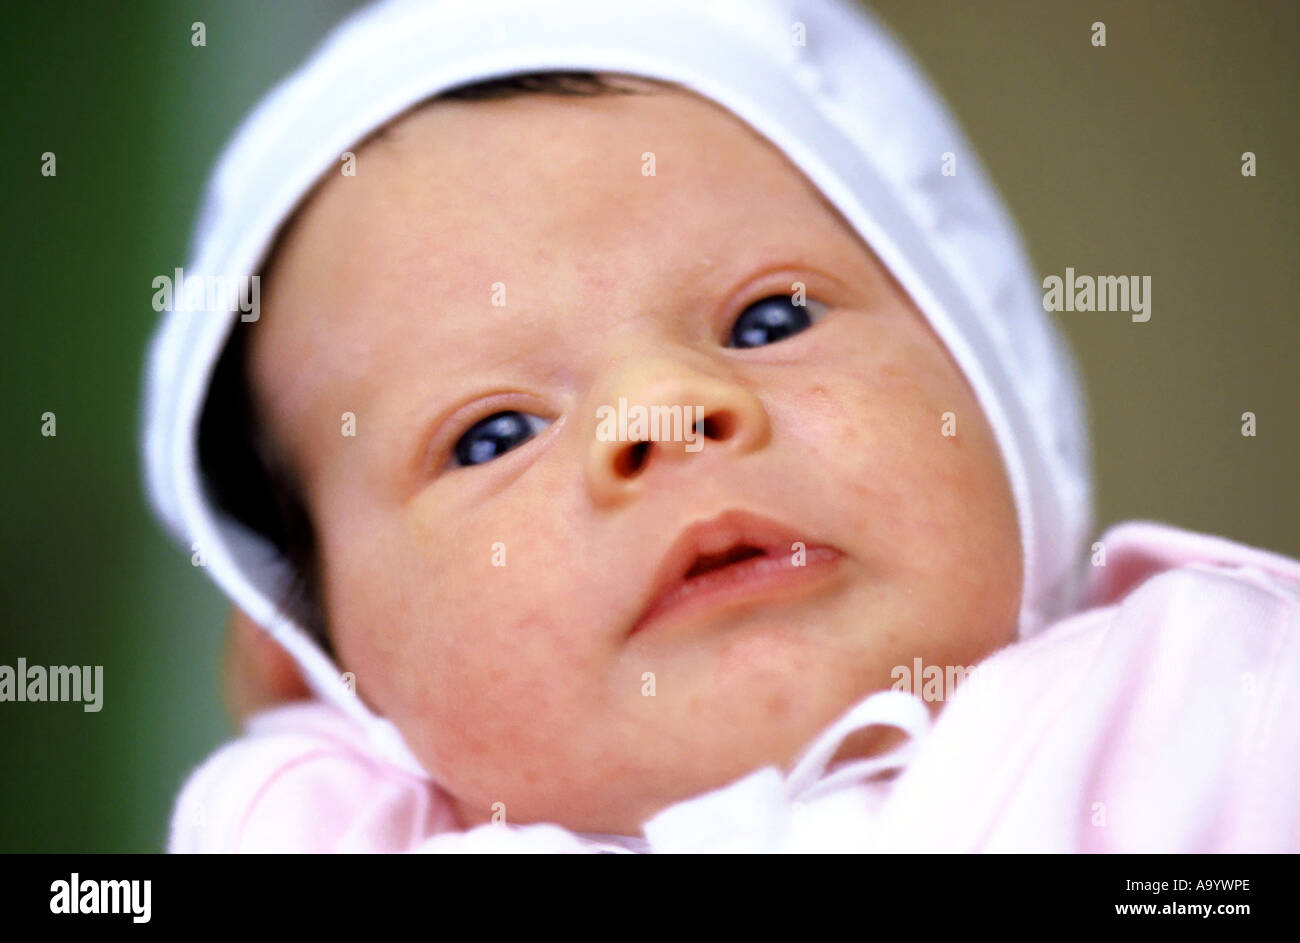 Polonia, neonato (0-3 mesi), close-up, ritratto Foto Stock